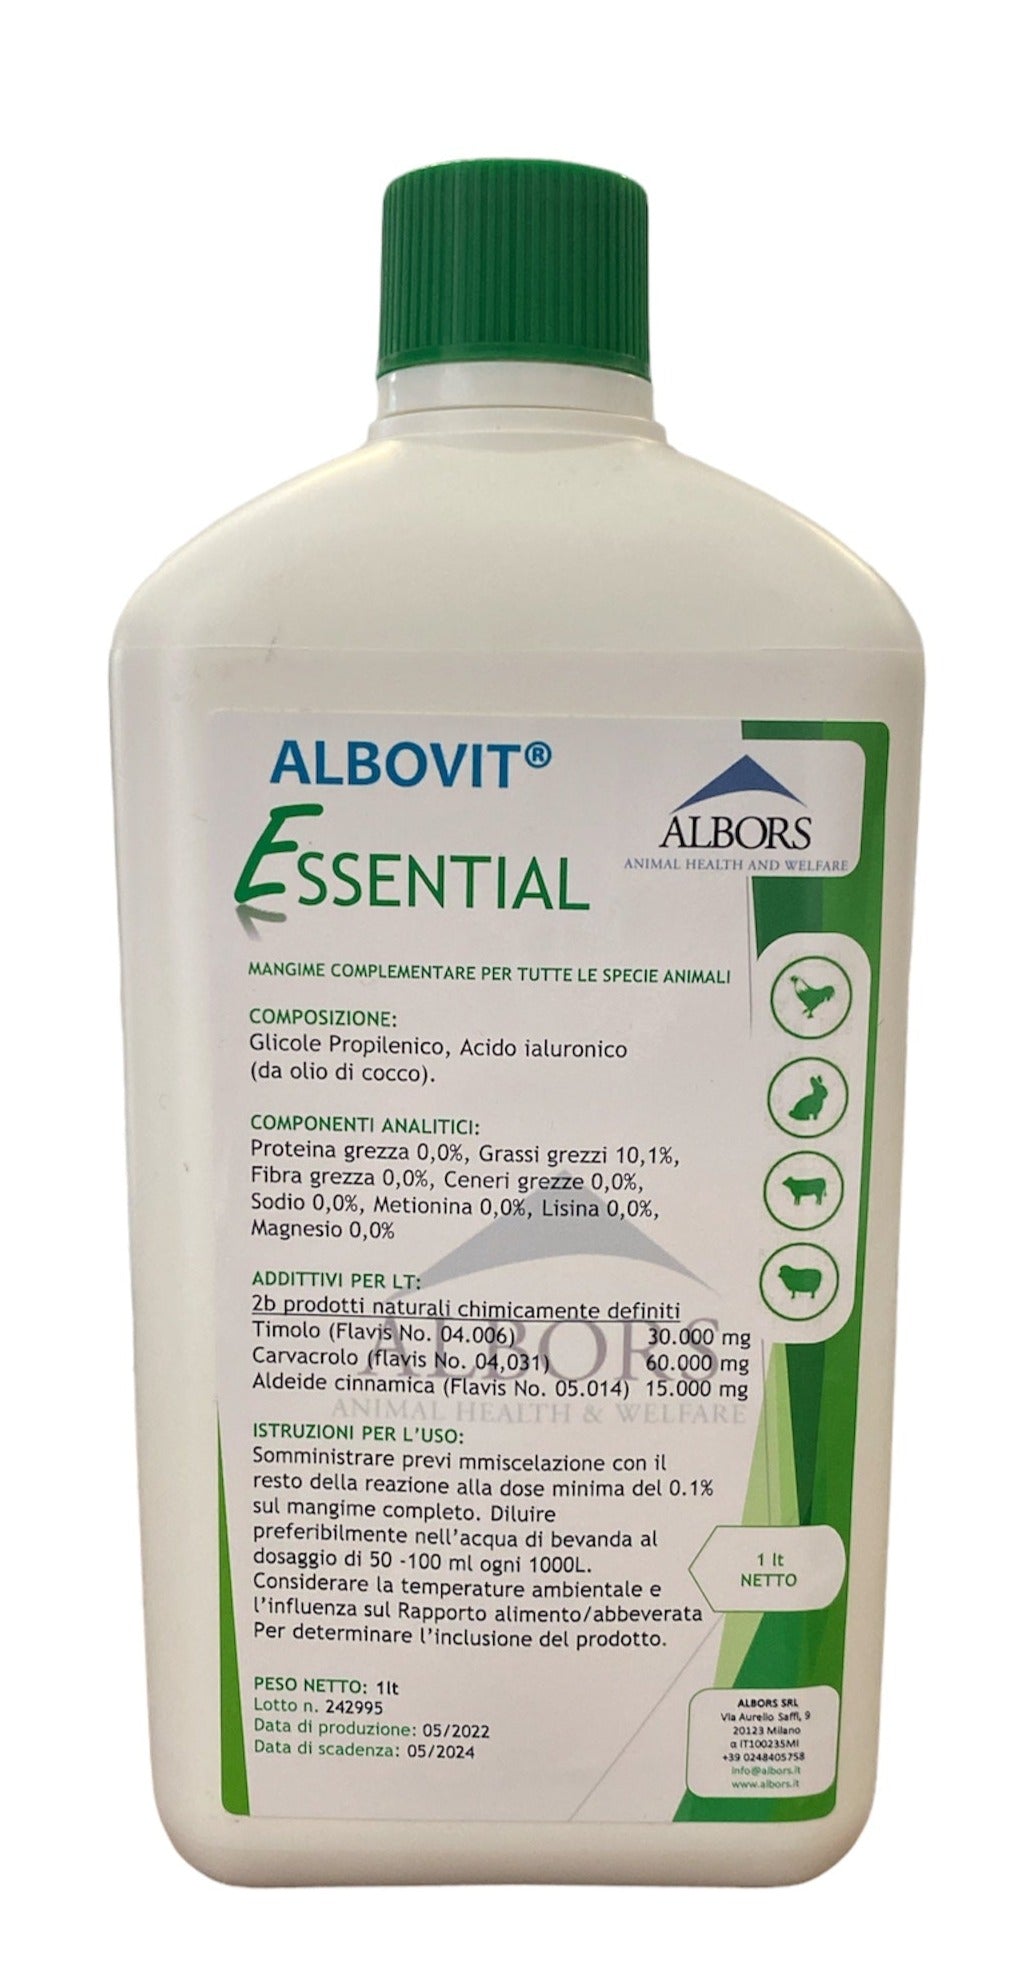 ALBOVIT® Essential